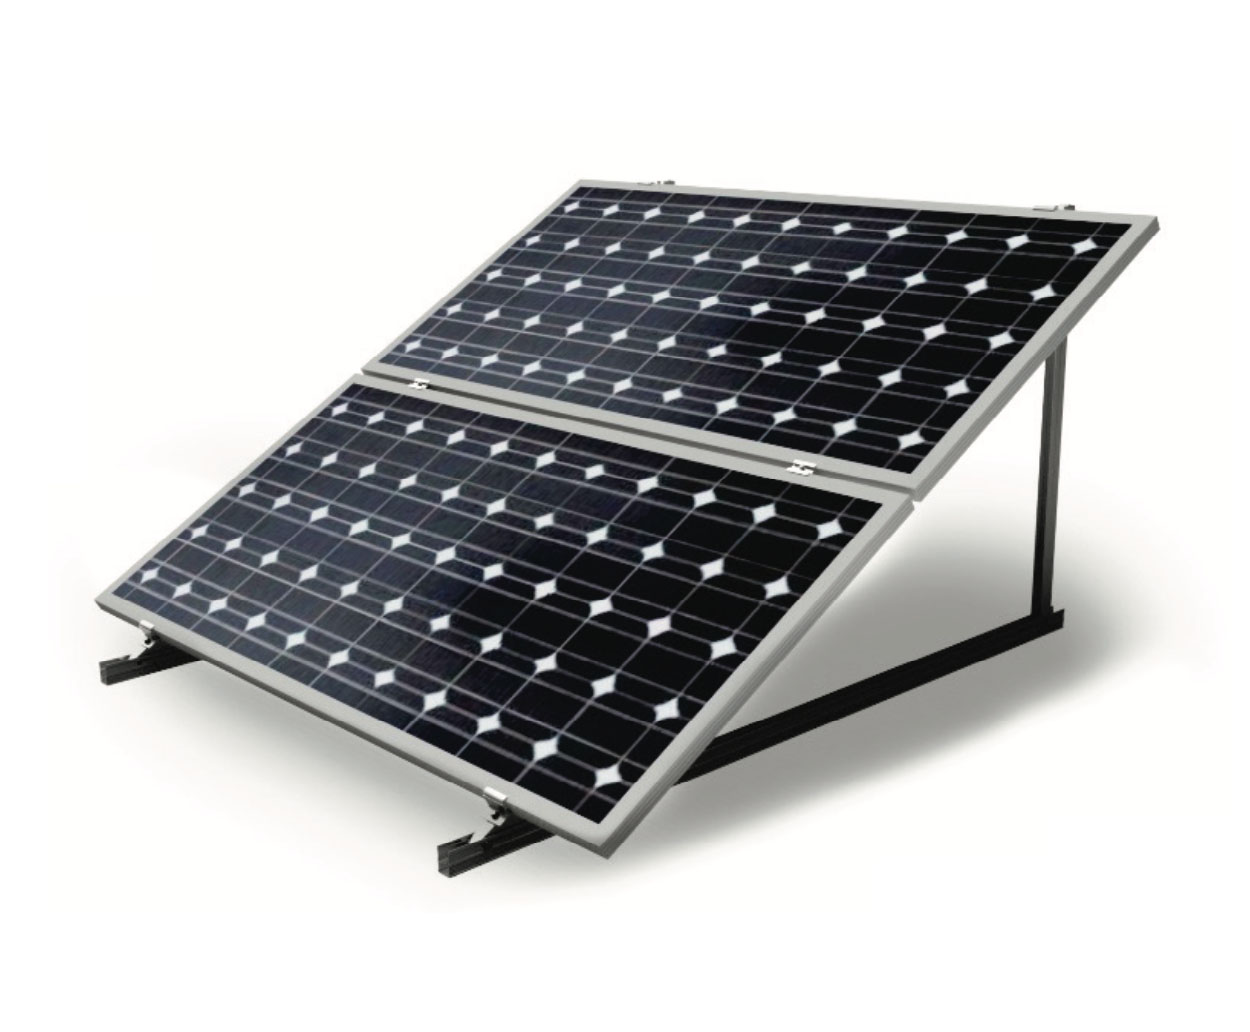 Soporte para 3 placas solares inclinado 15º (paneles hasta 2400x1134mm)